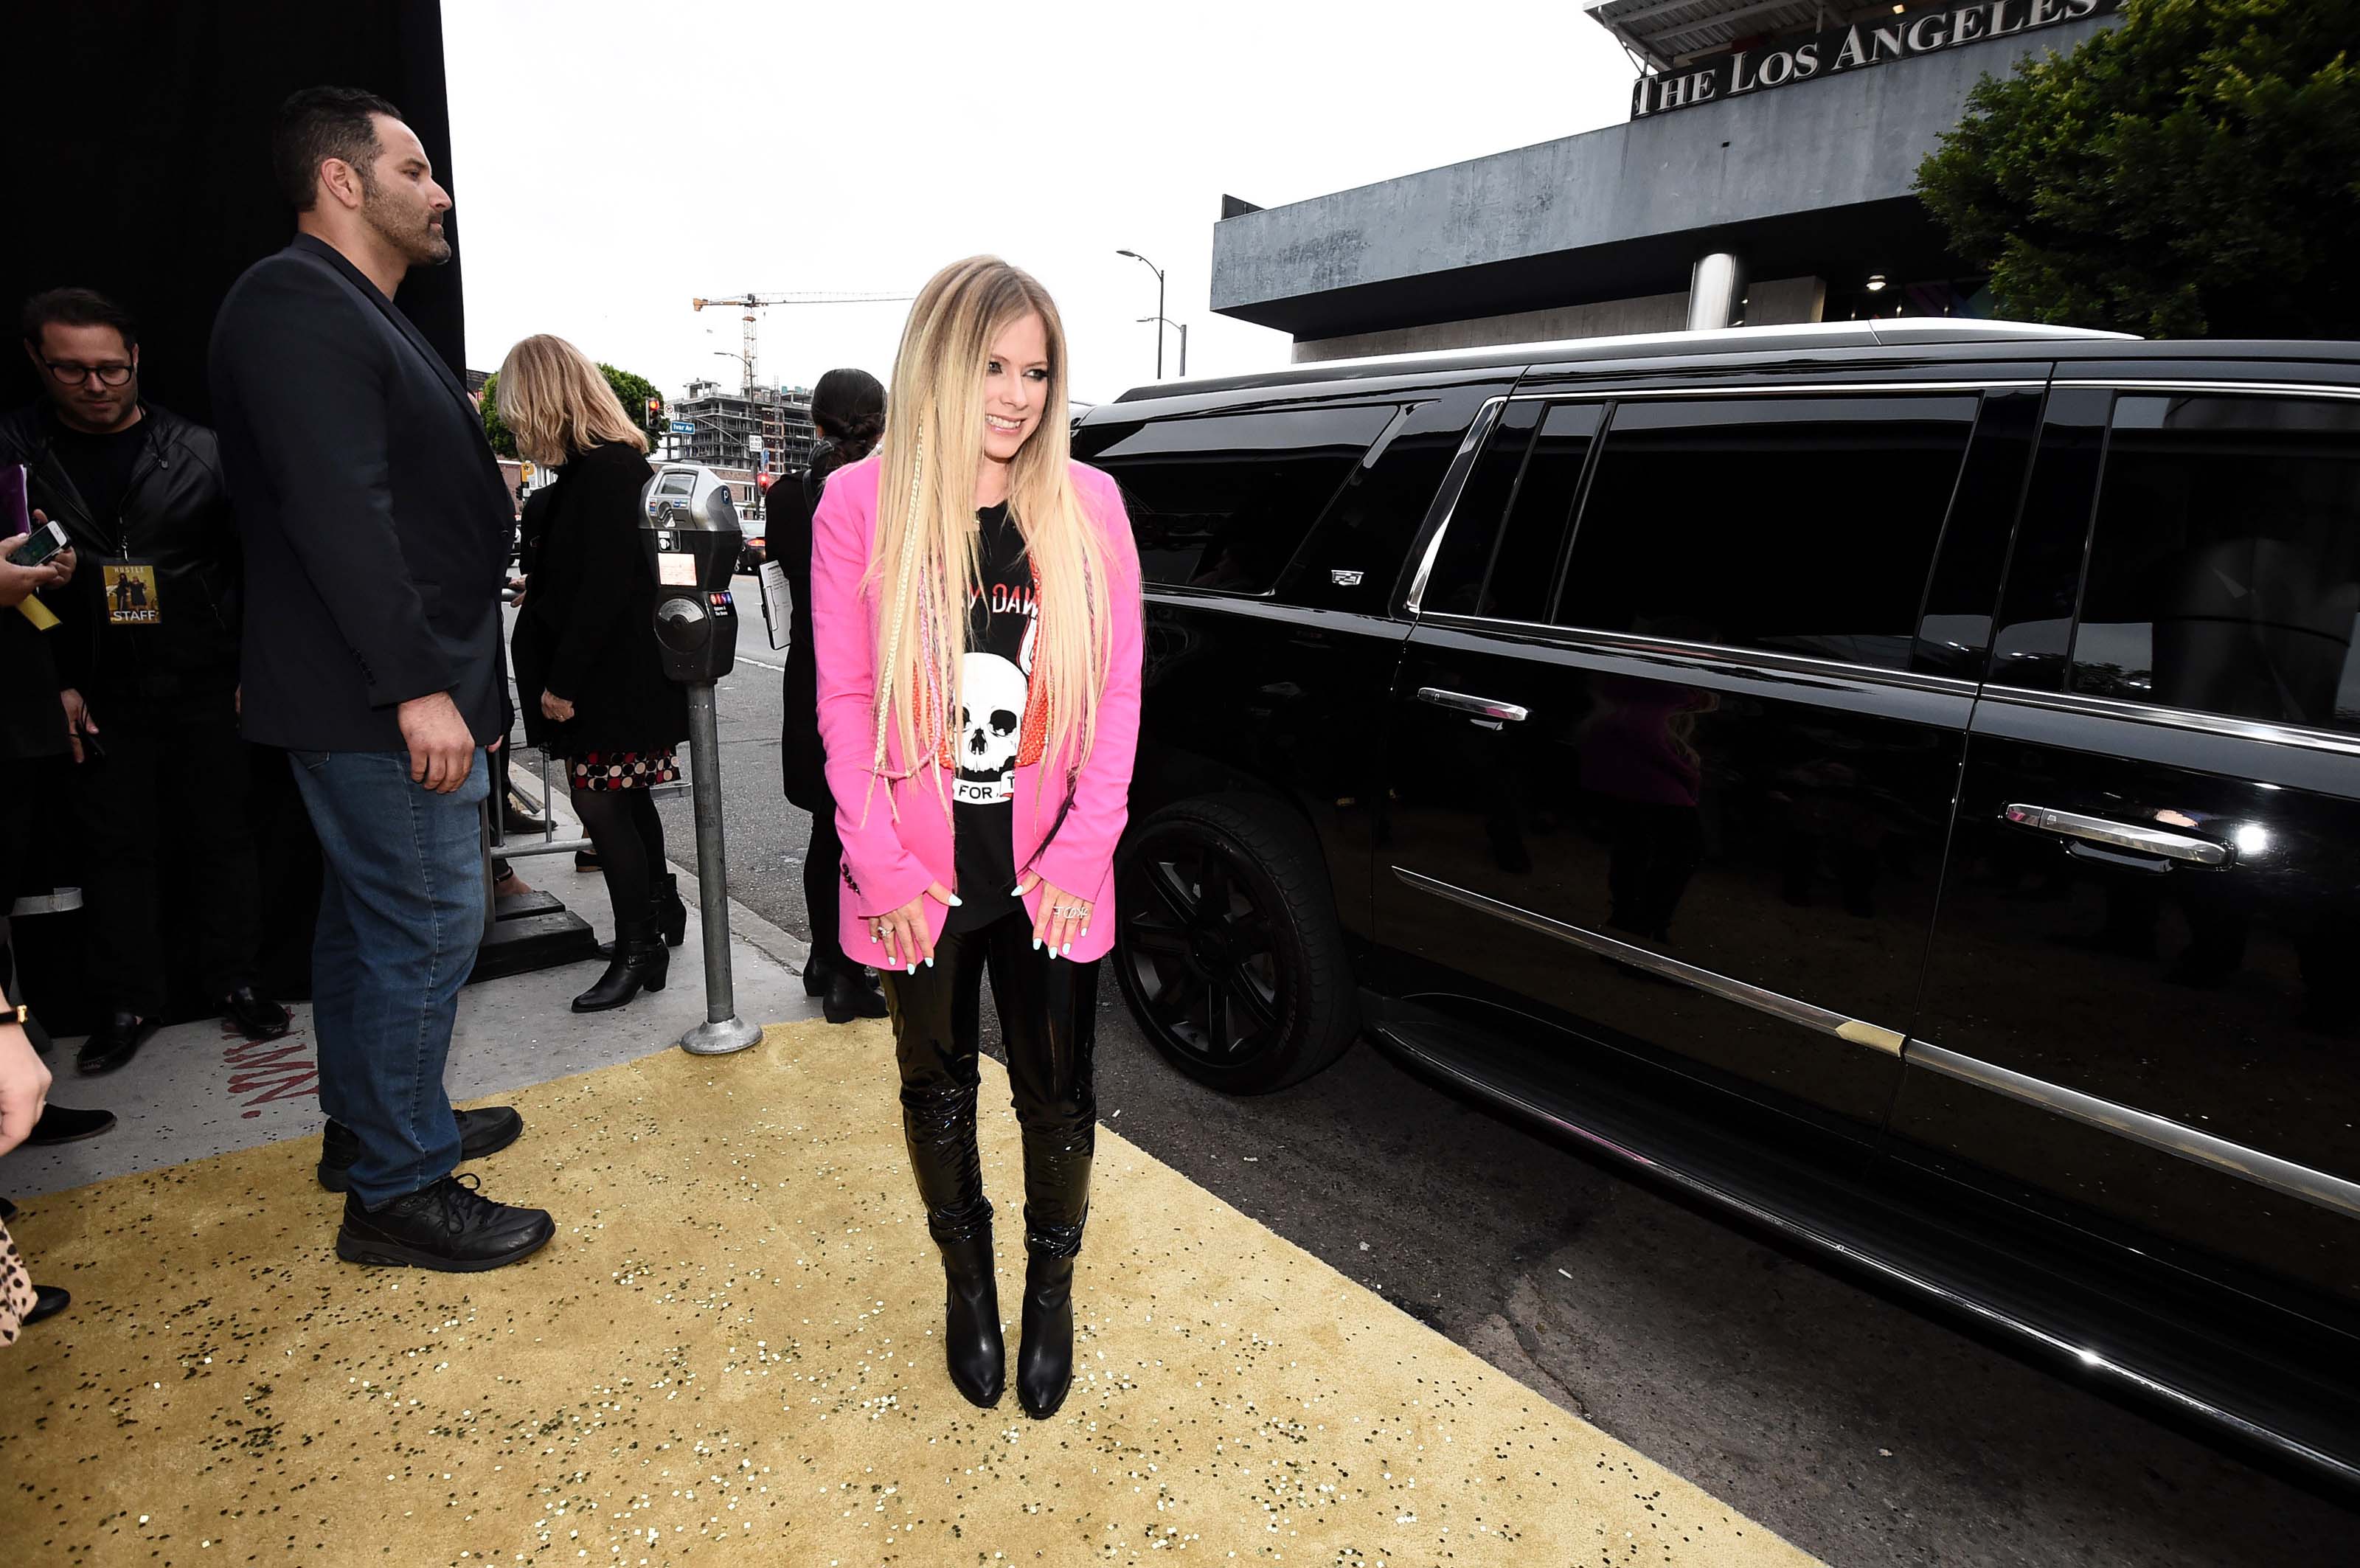 Avril Lavigne attends The Hustle premiere